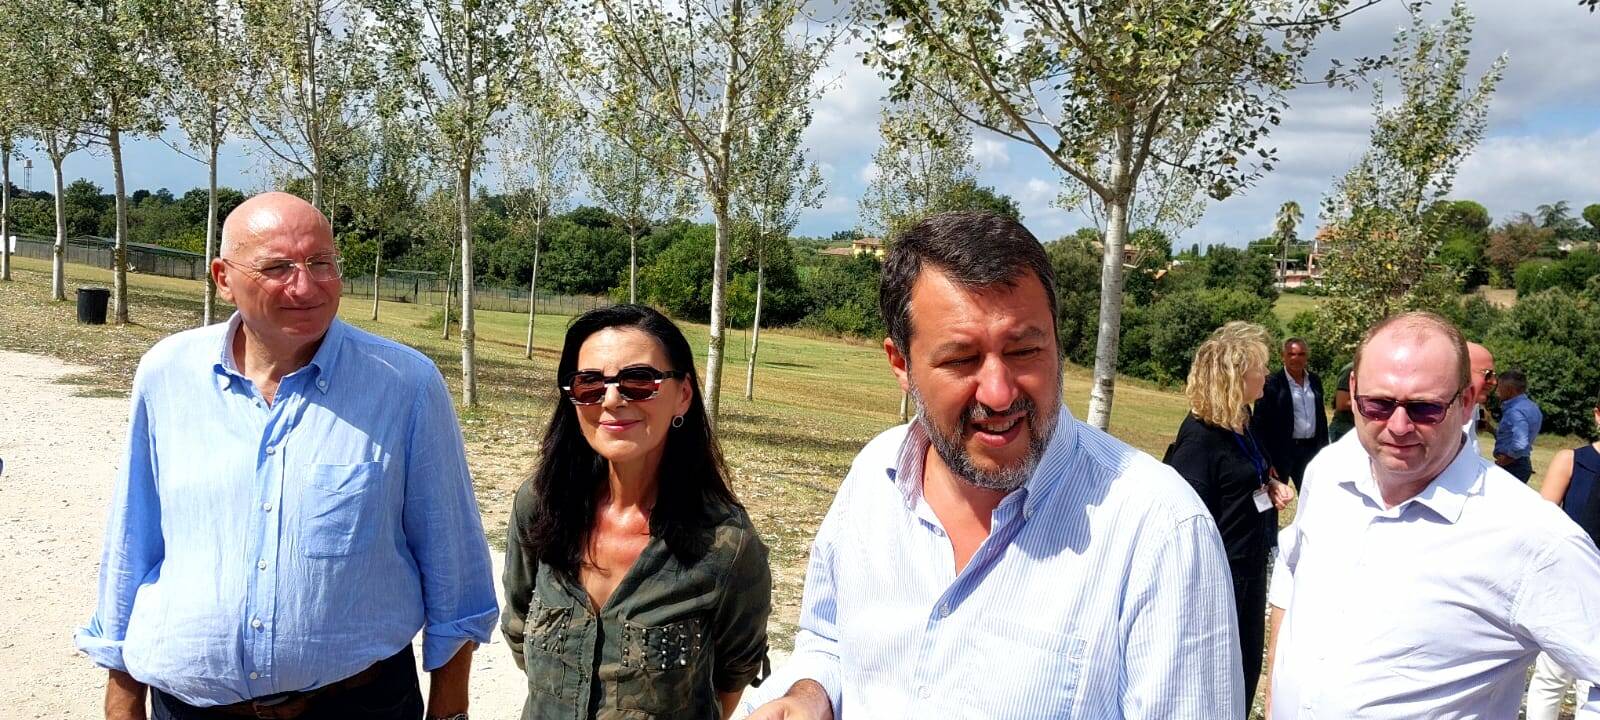 Sicurezza stradale, Bonfrisco (Id-Lega): “Bene codice Salvini, avanti con pene per chi abbandona animali”